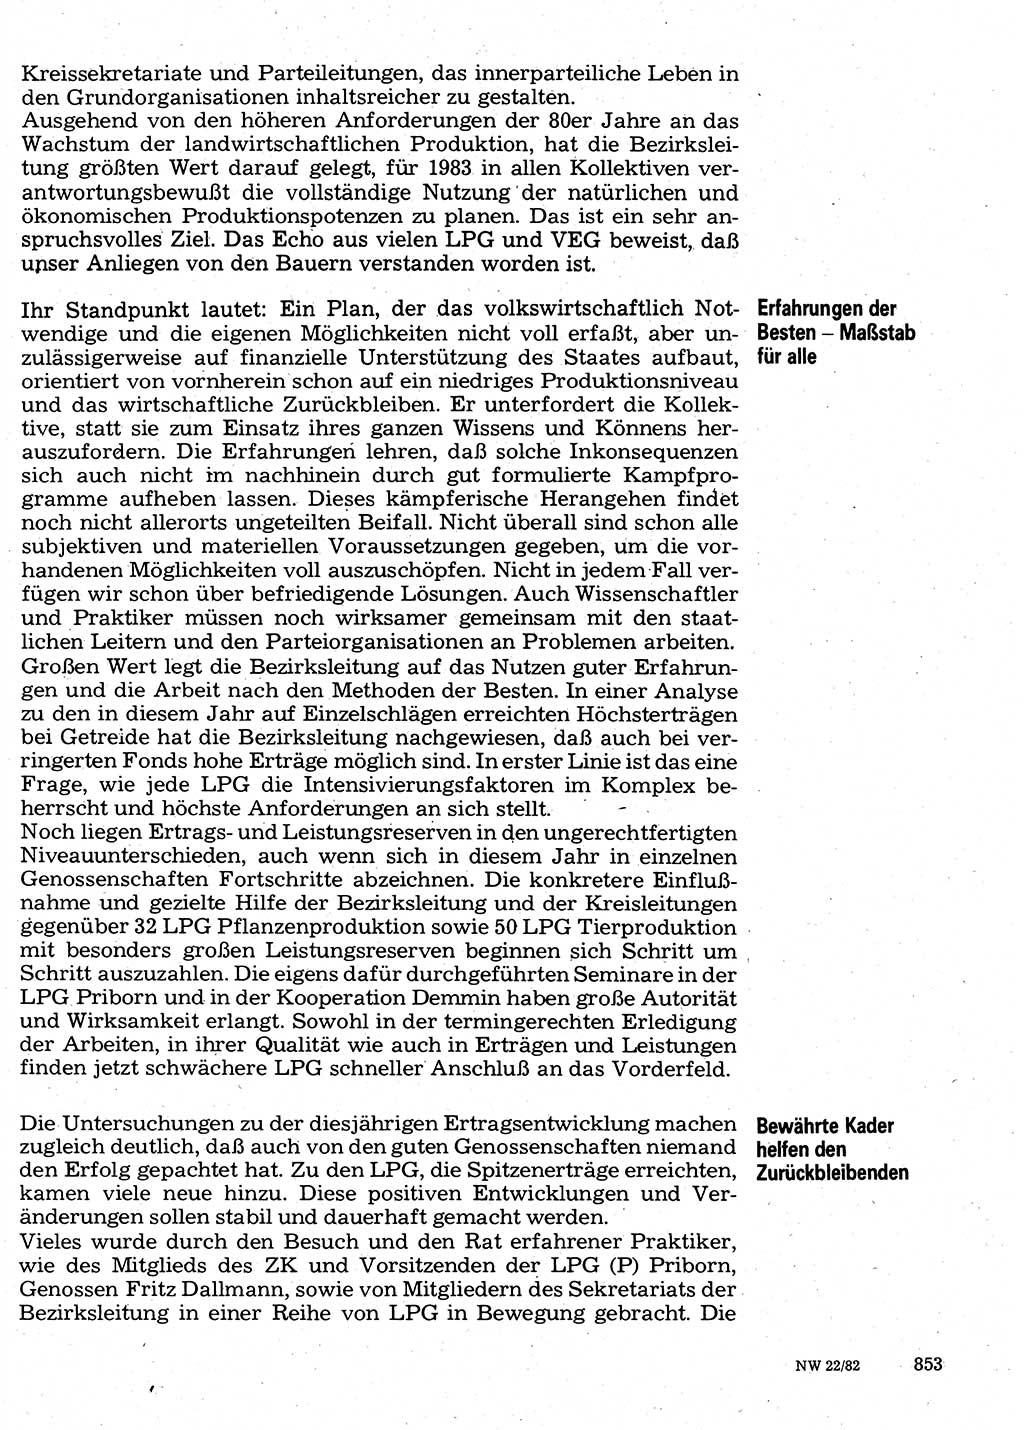 Neuer Weg (NW), Organ des Zentralkomitees (ZK) der SED (Sozialistische Einheitspartei Deutschlands) für Fragen des Parteilebens, 37. Jahrgang [Deutsche Demokratische Republik (DDR)] 1982, Seite 853 (NW ZK SED DDR 1982, S. 853)